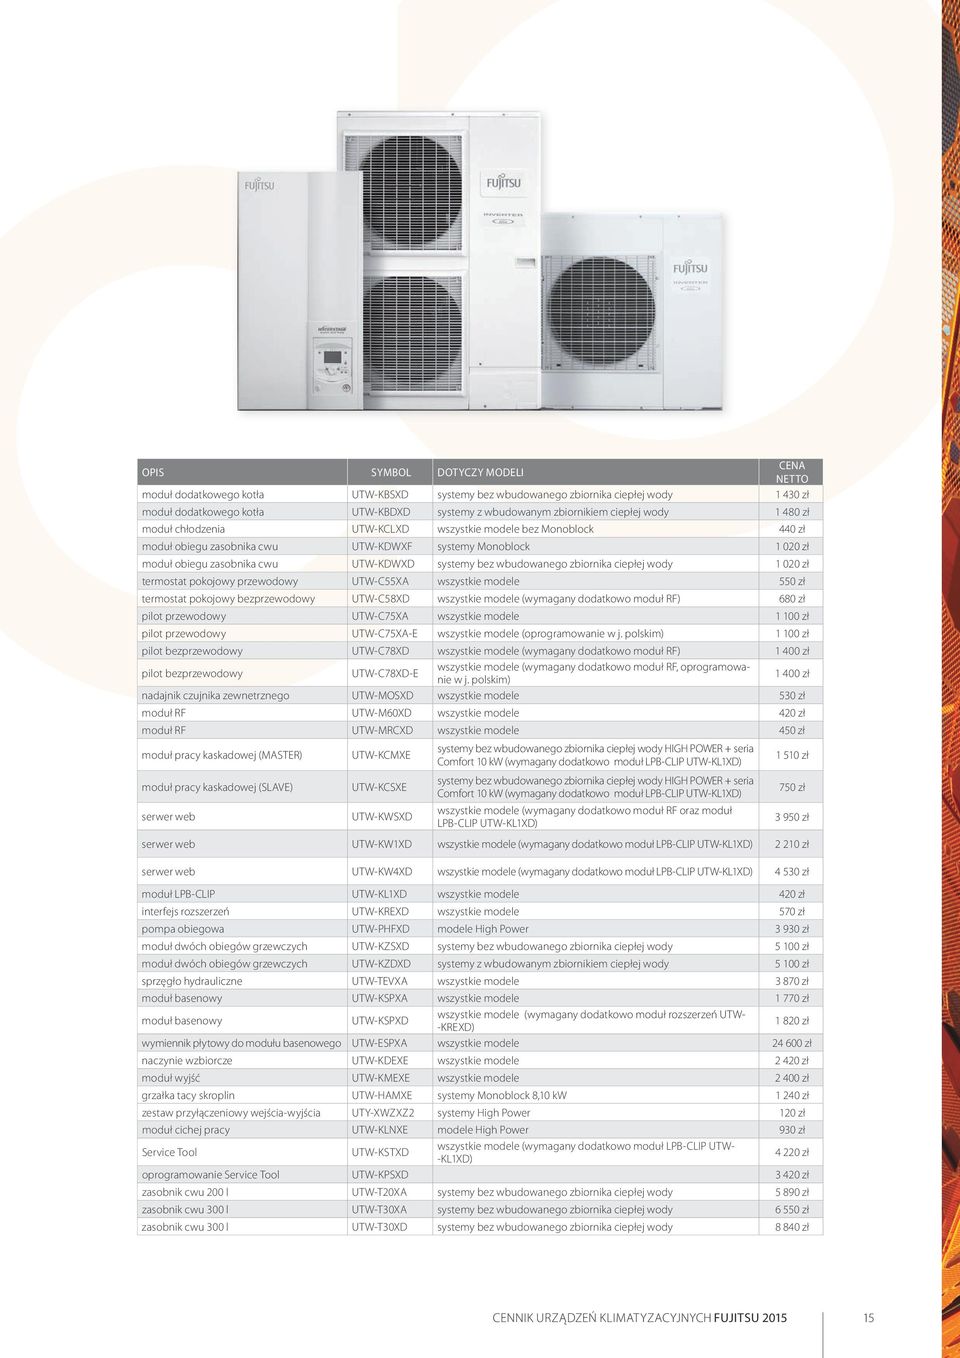 wbudowanego zbiornika ciepłej wody 1 020 zł termostat pokojowy przewodowy UTW-C55XA wszystkie modele 550 zł termostat pokojowy bezprzewodowy UTW-C58XD wszystkie modele (wymagany dodatkowo moduł RF)